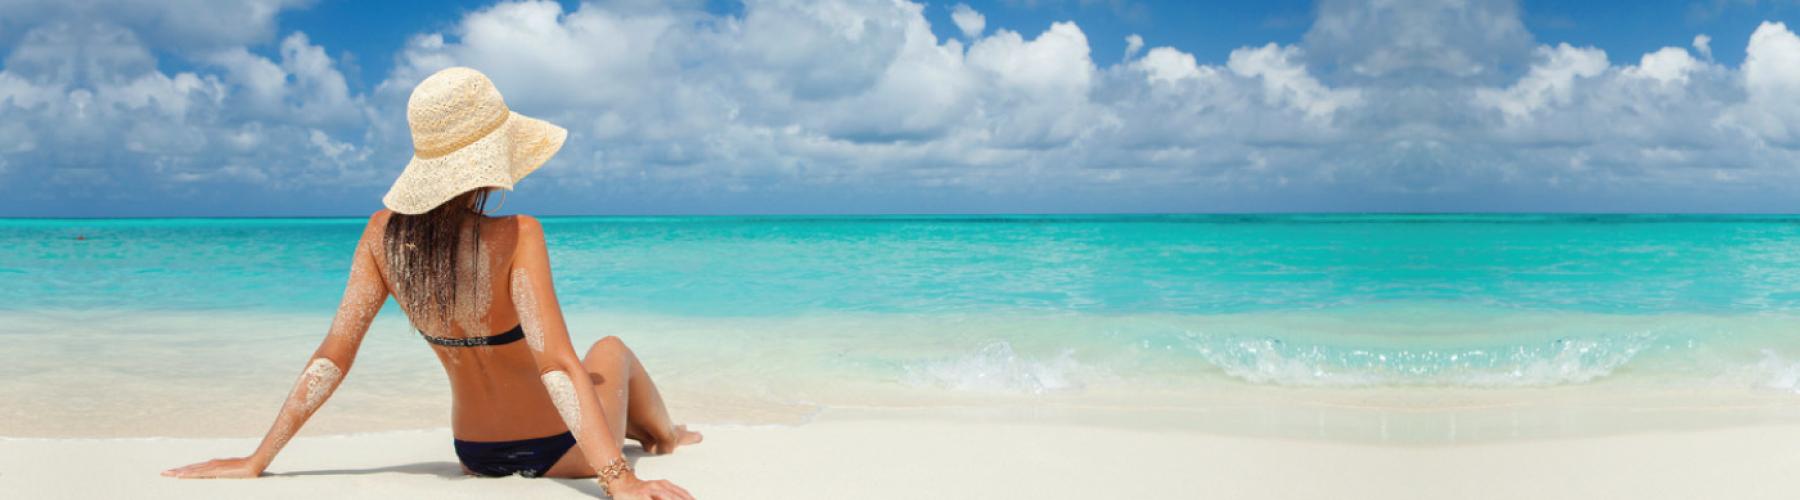 Райский отдых на Багамах